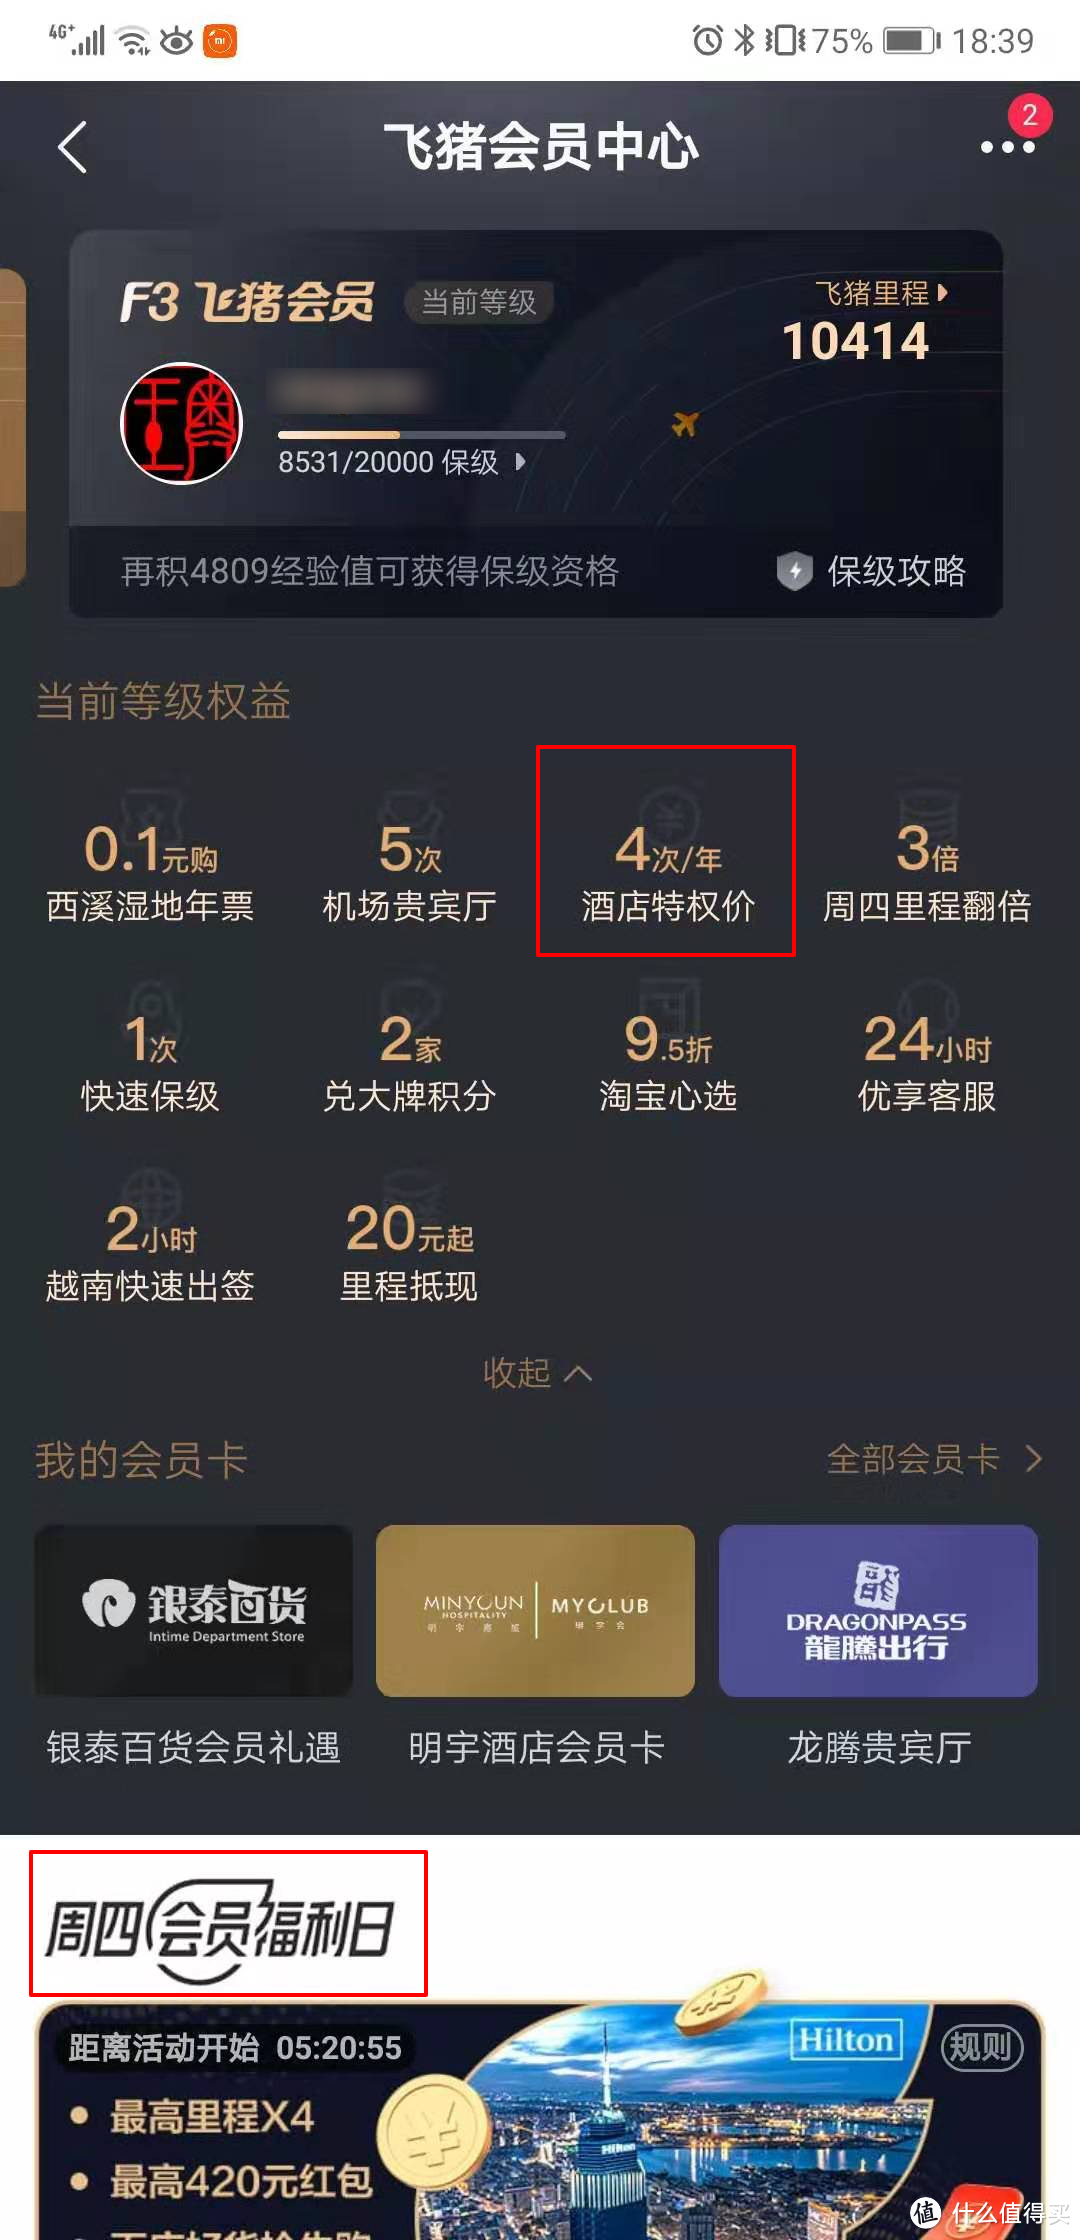 飞猪F3会员特价入住成都东大明宇豪雅饭店免费升级行政套房的体验报告